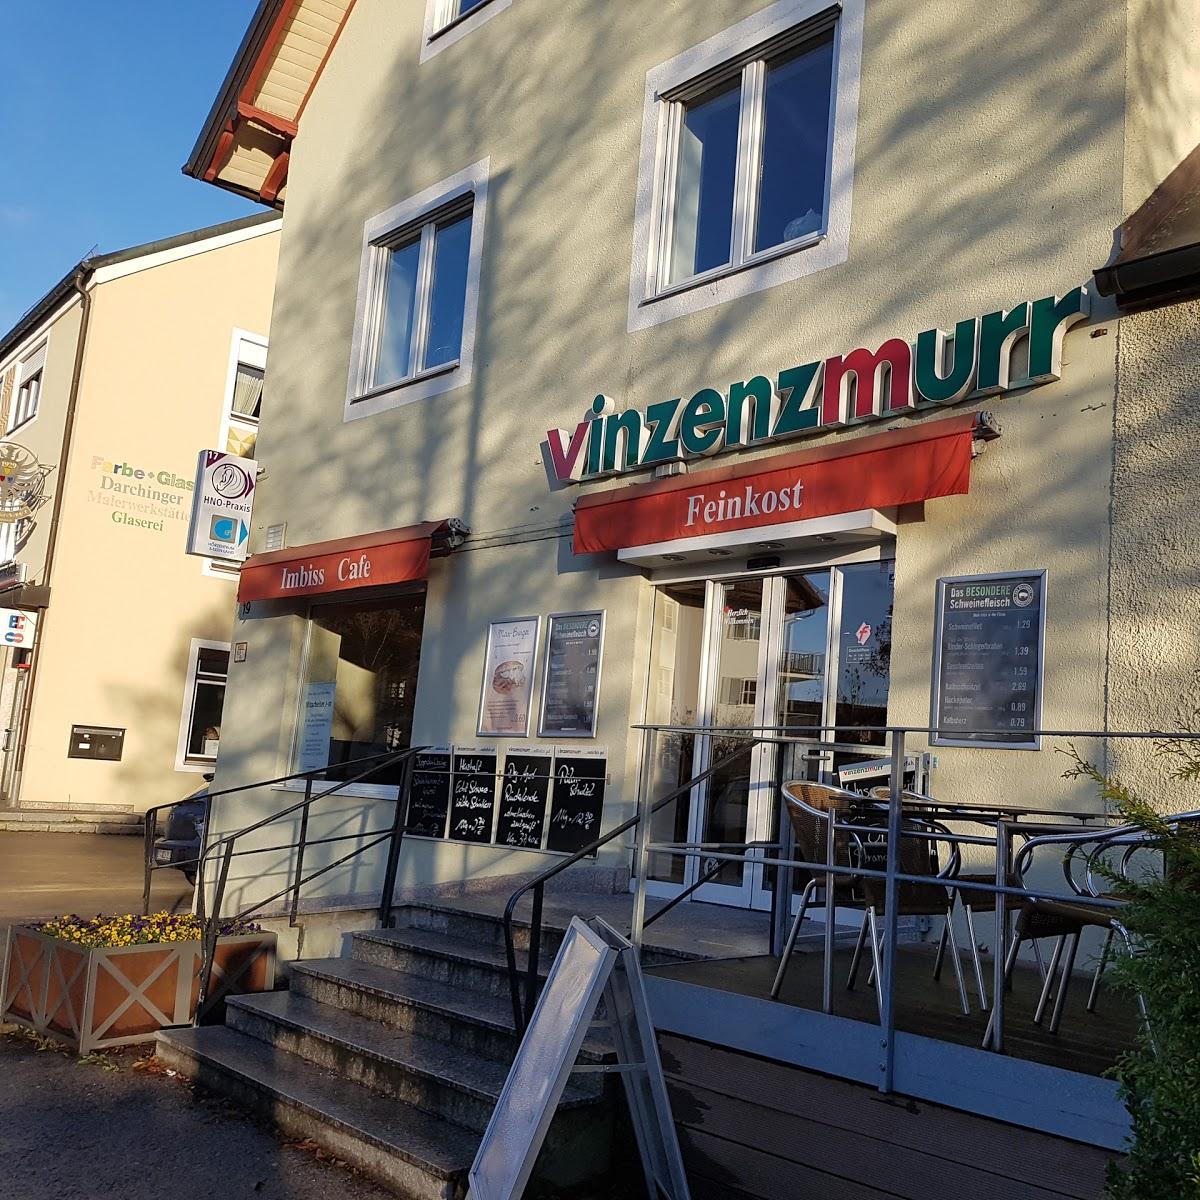 Restaurant "Vinzenzmurr Metzgerei -" in Herrsching am Ammersee